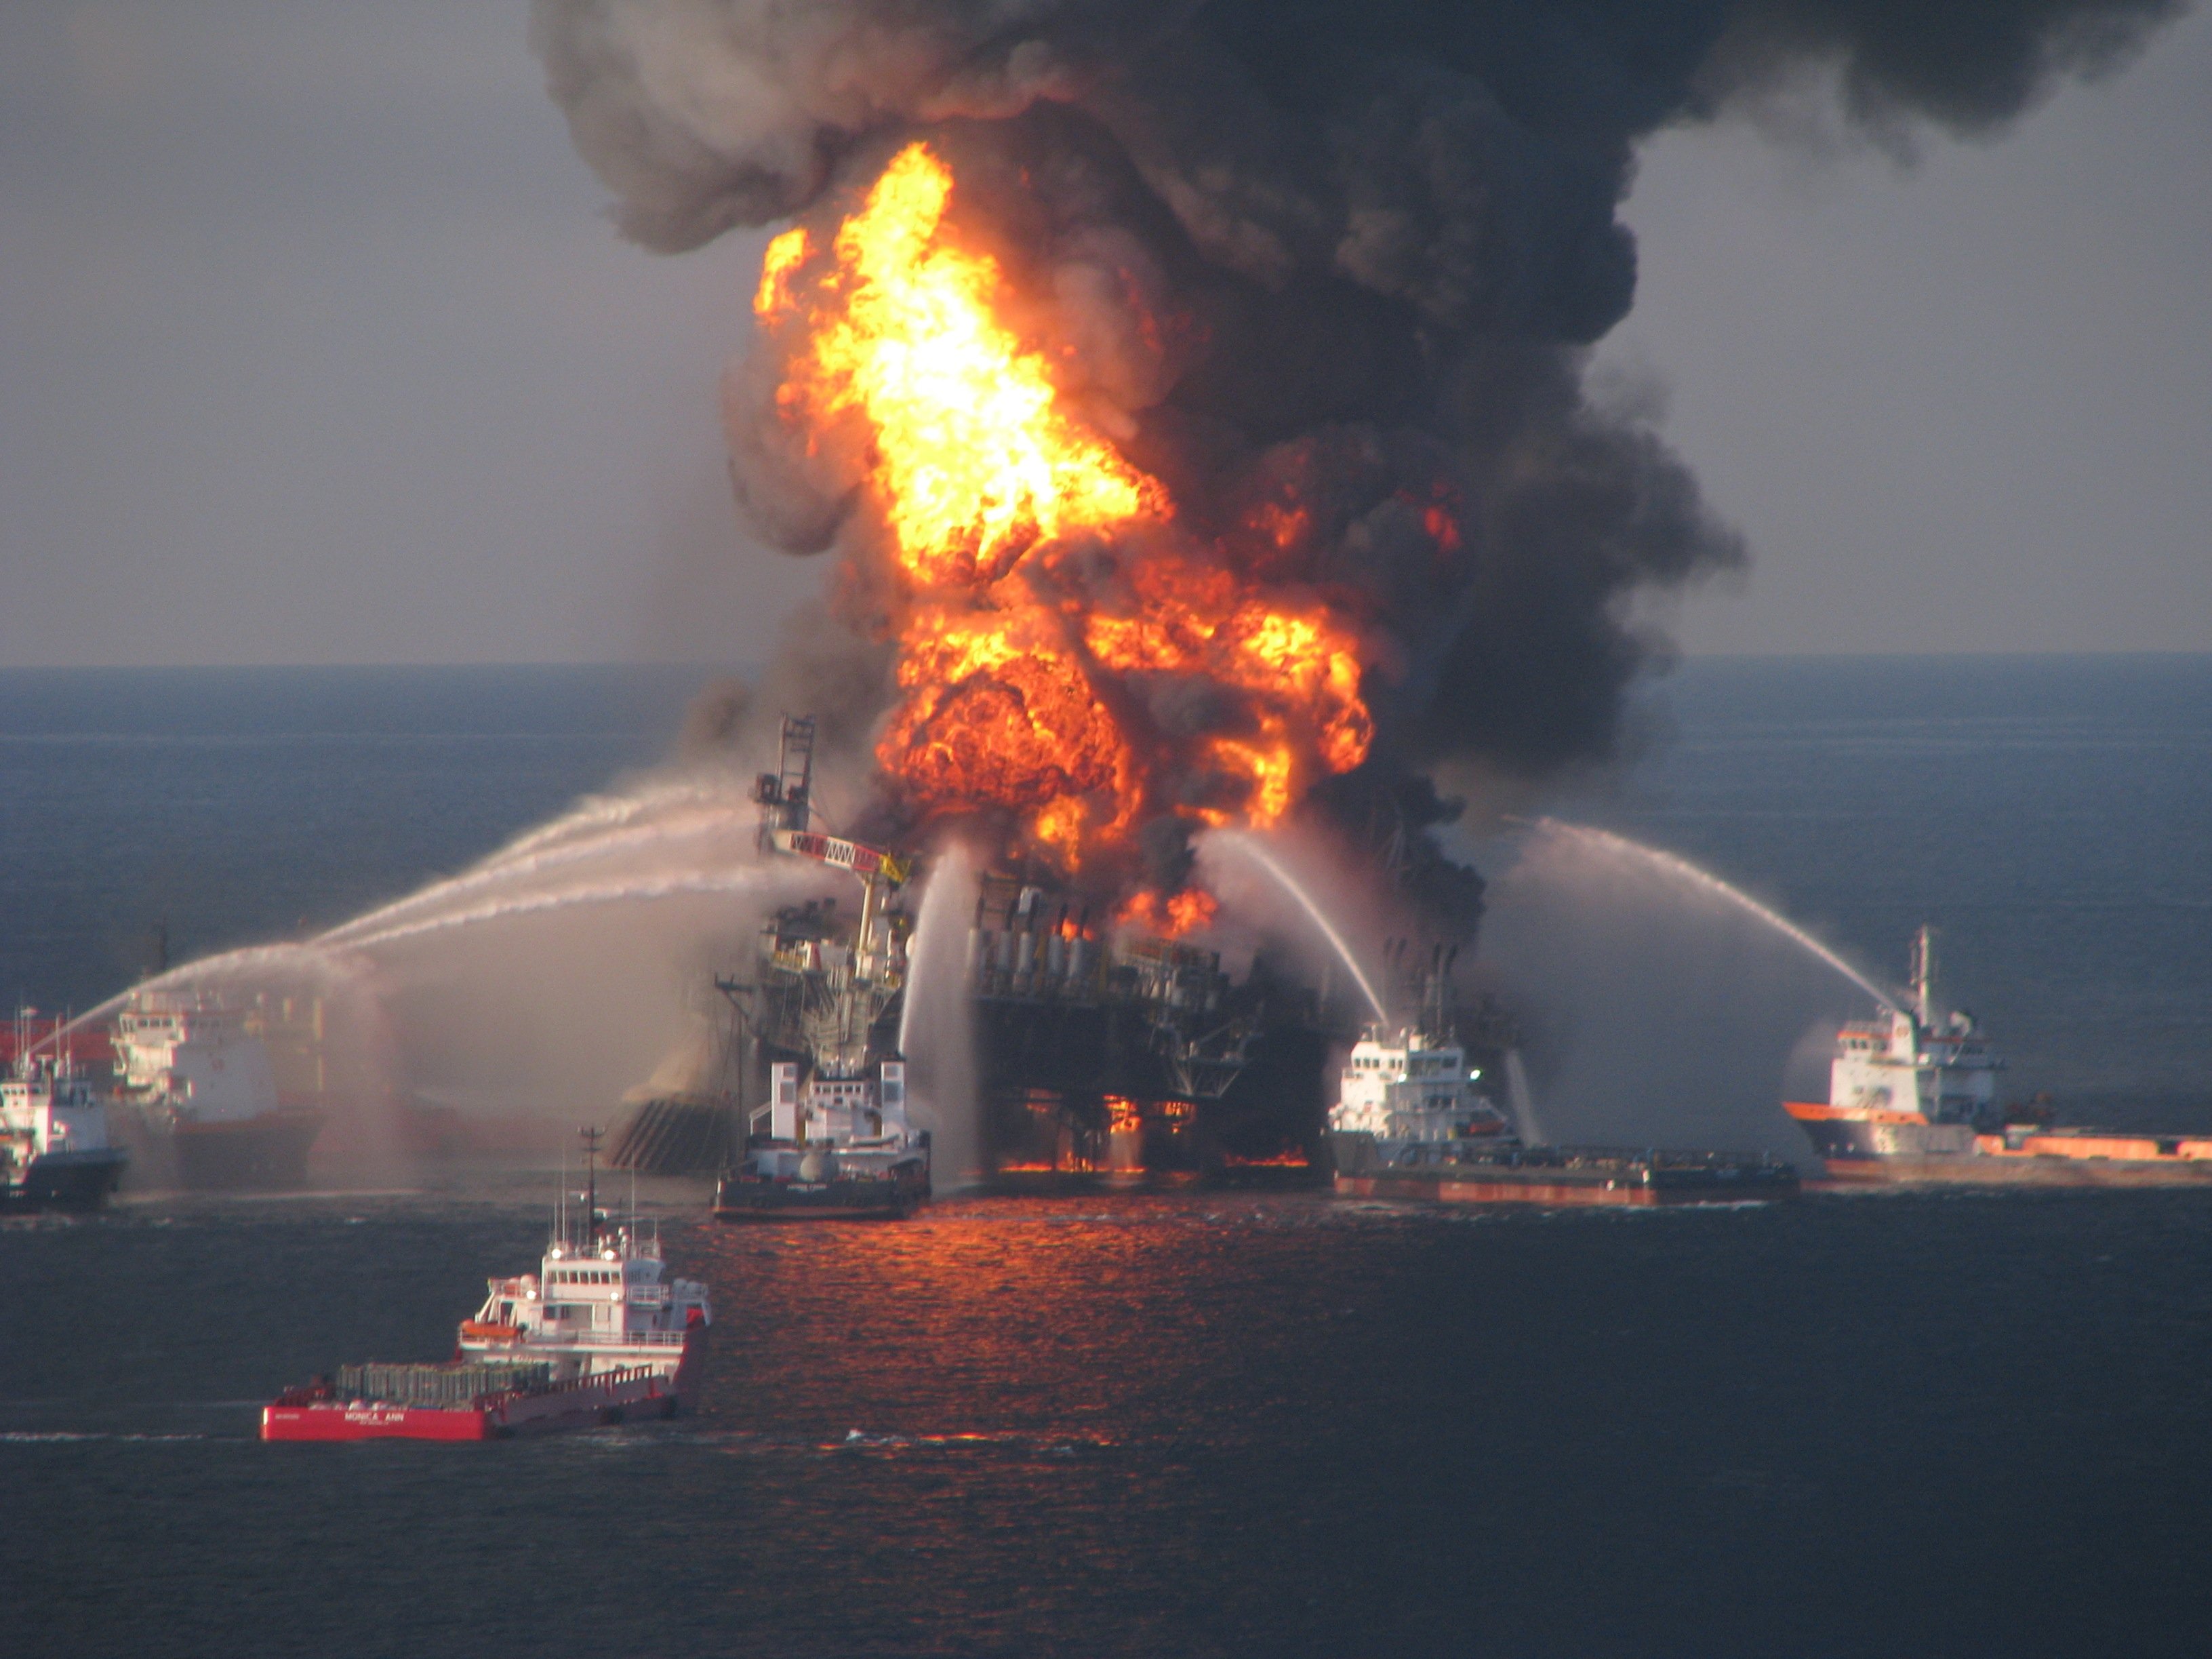 Die Ölbohrinsel Deepwater Horizon war nach einer Explosion im April 2010 gesunken. Das Unglück führte zu einer verheerenden Ölpest im Golf von Mexiko.